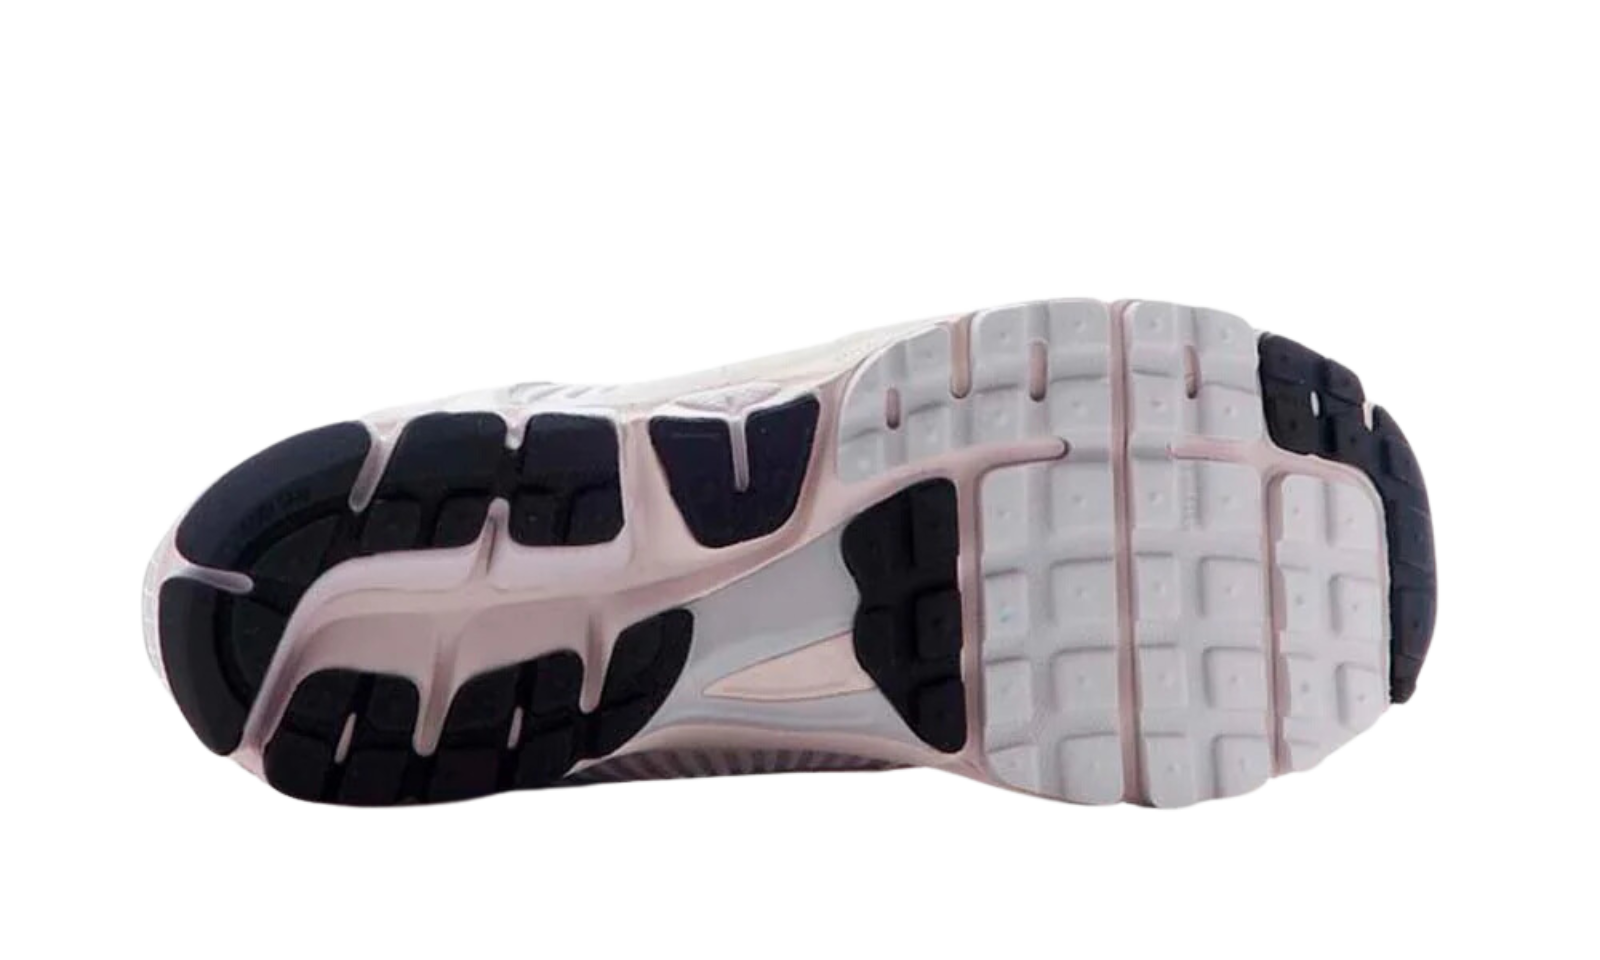 Nike Vomero 5 Vast Grey